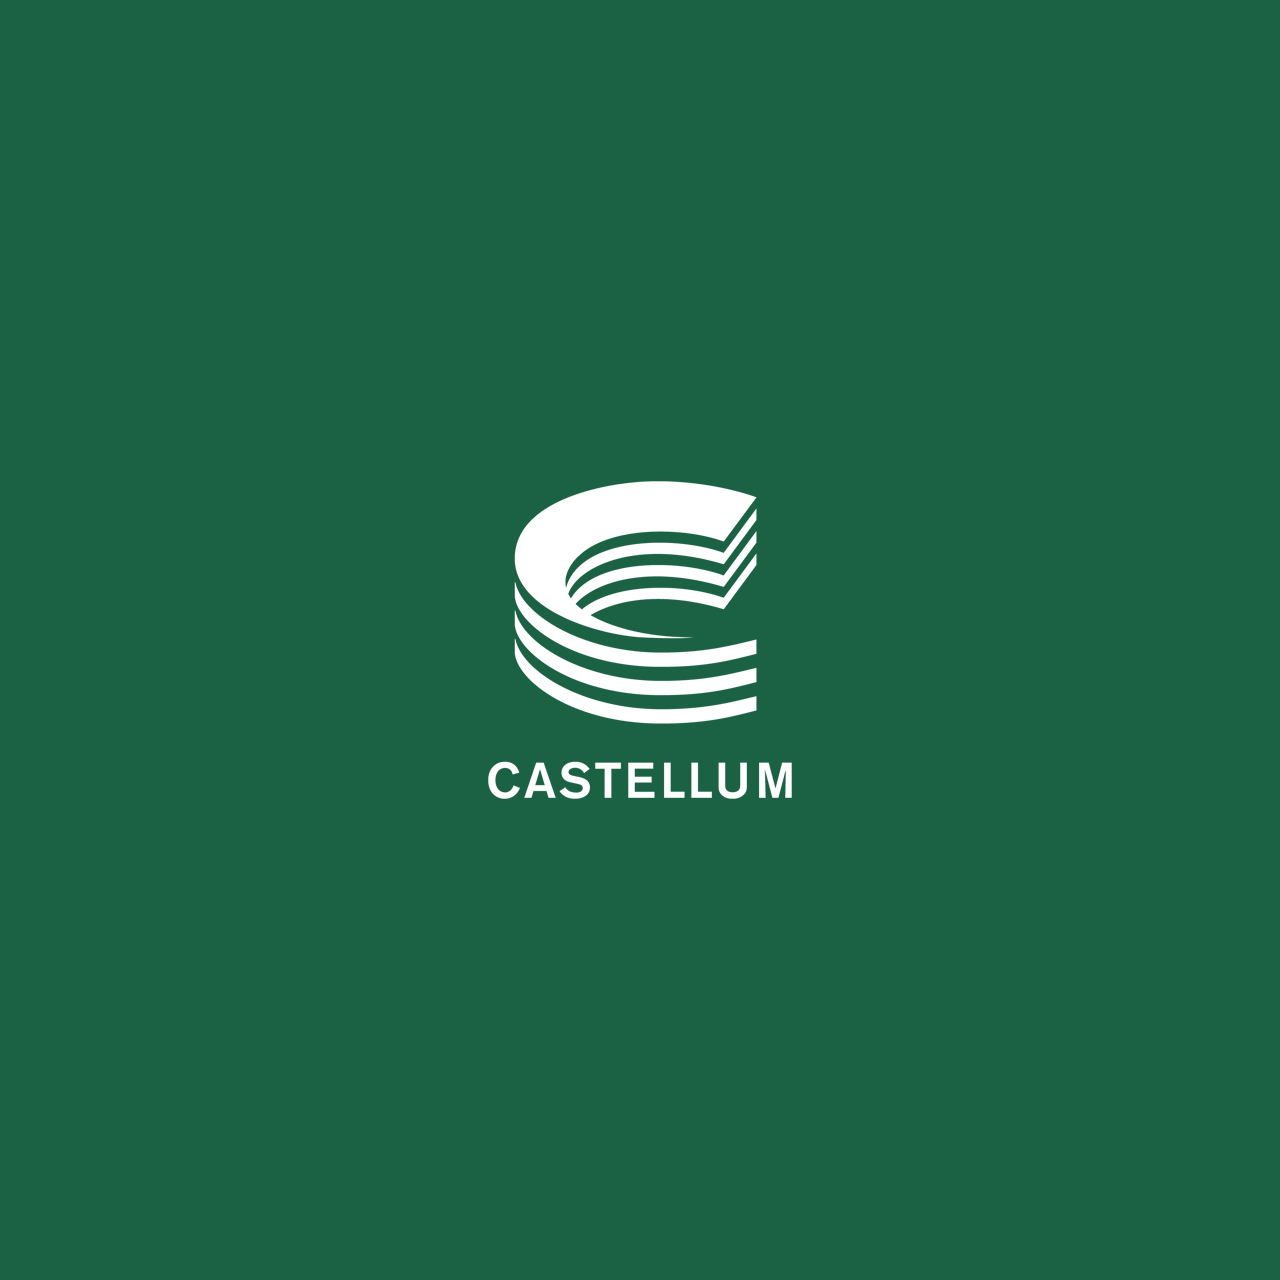 Castellum logo